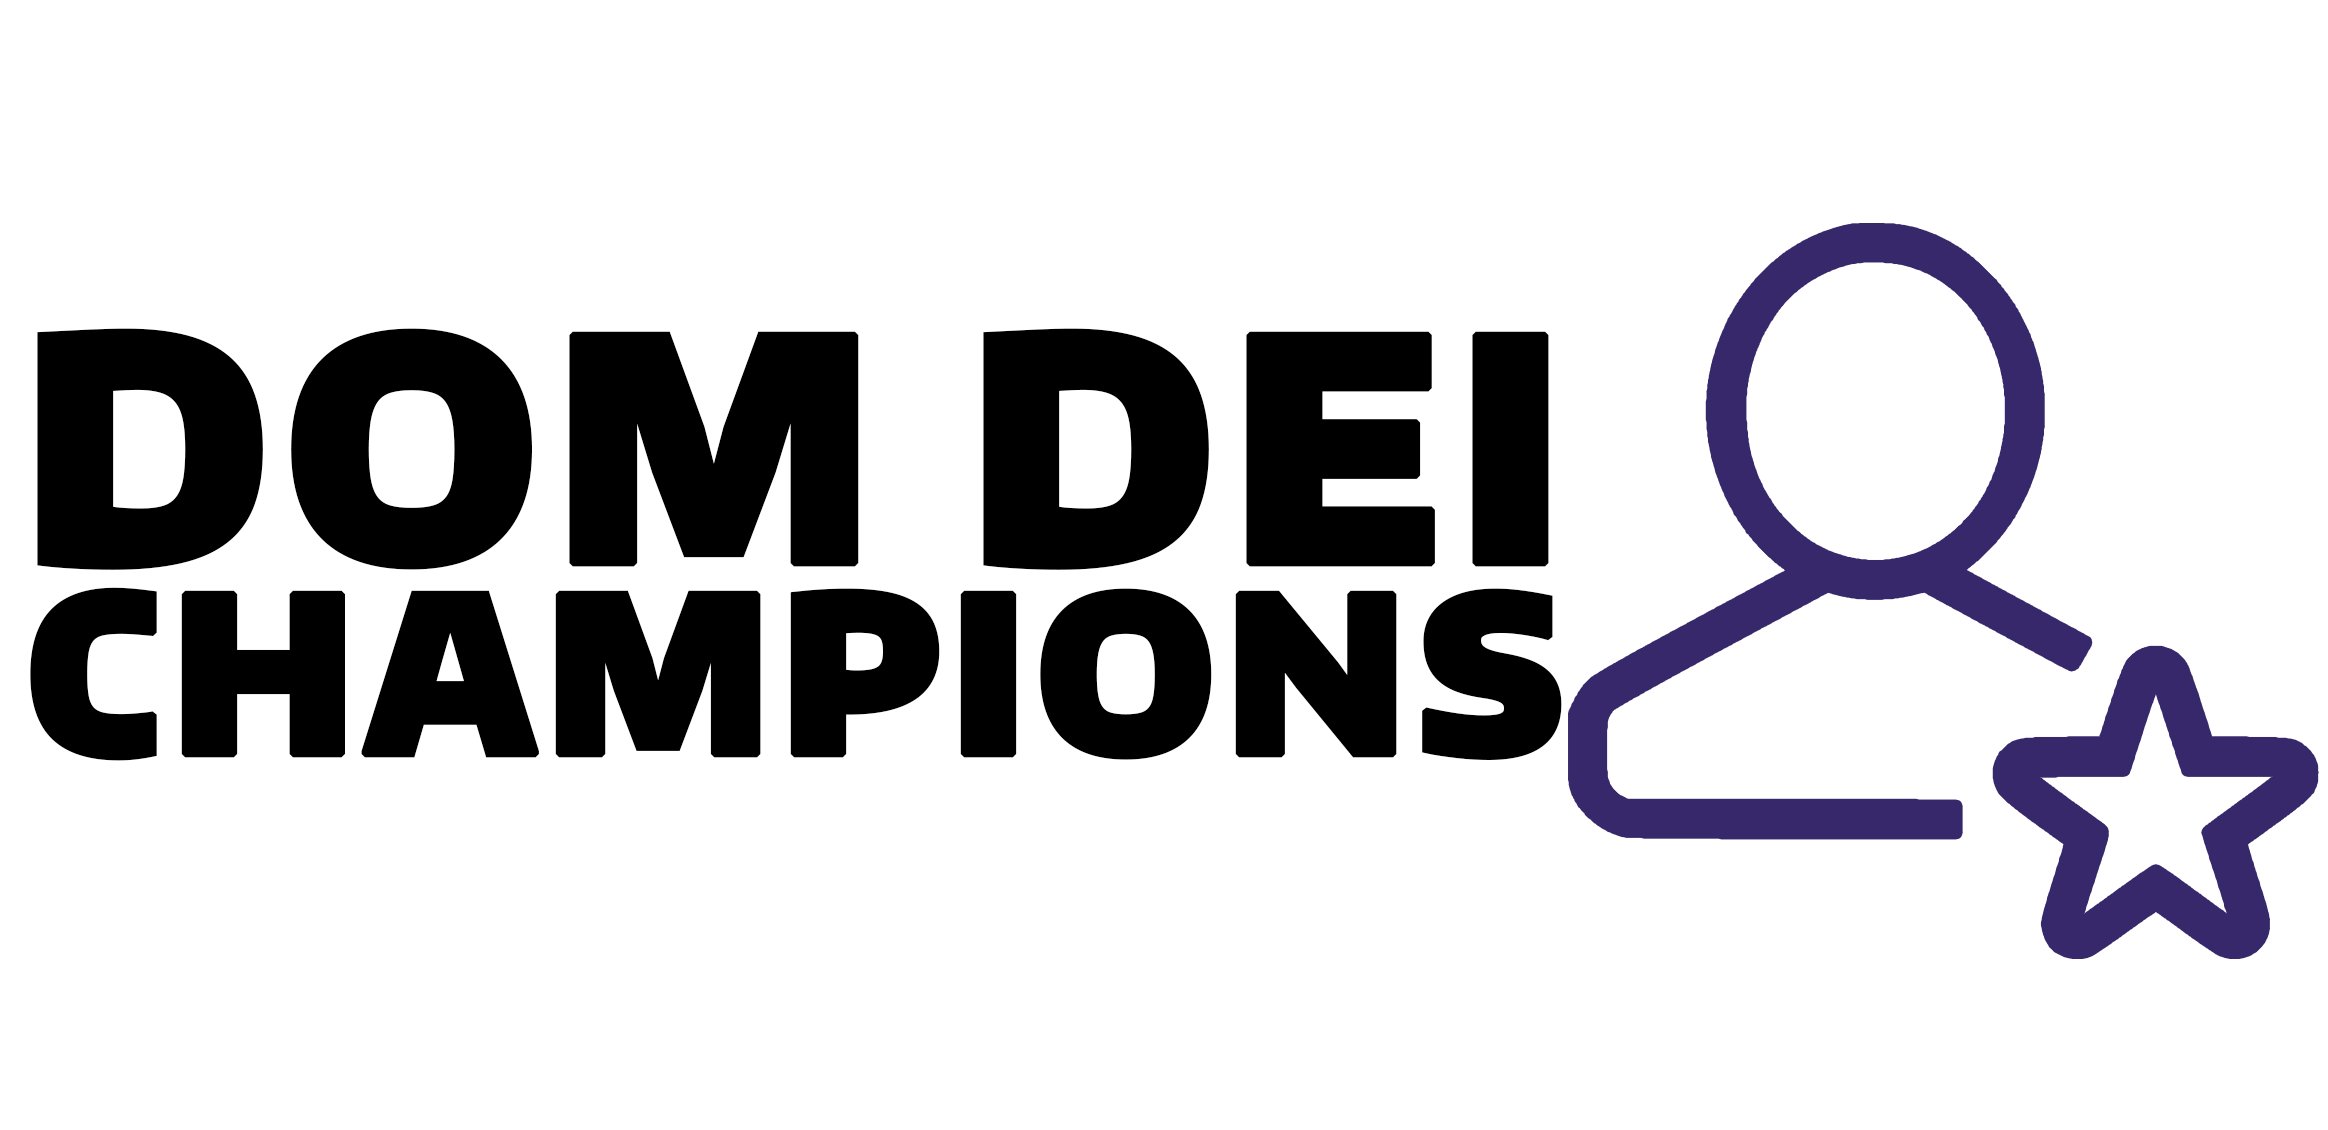 DOM DEI Champions